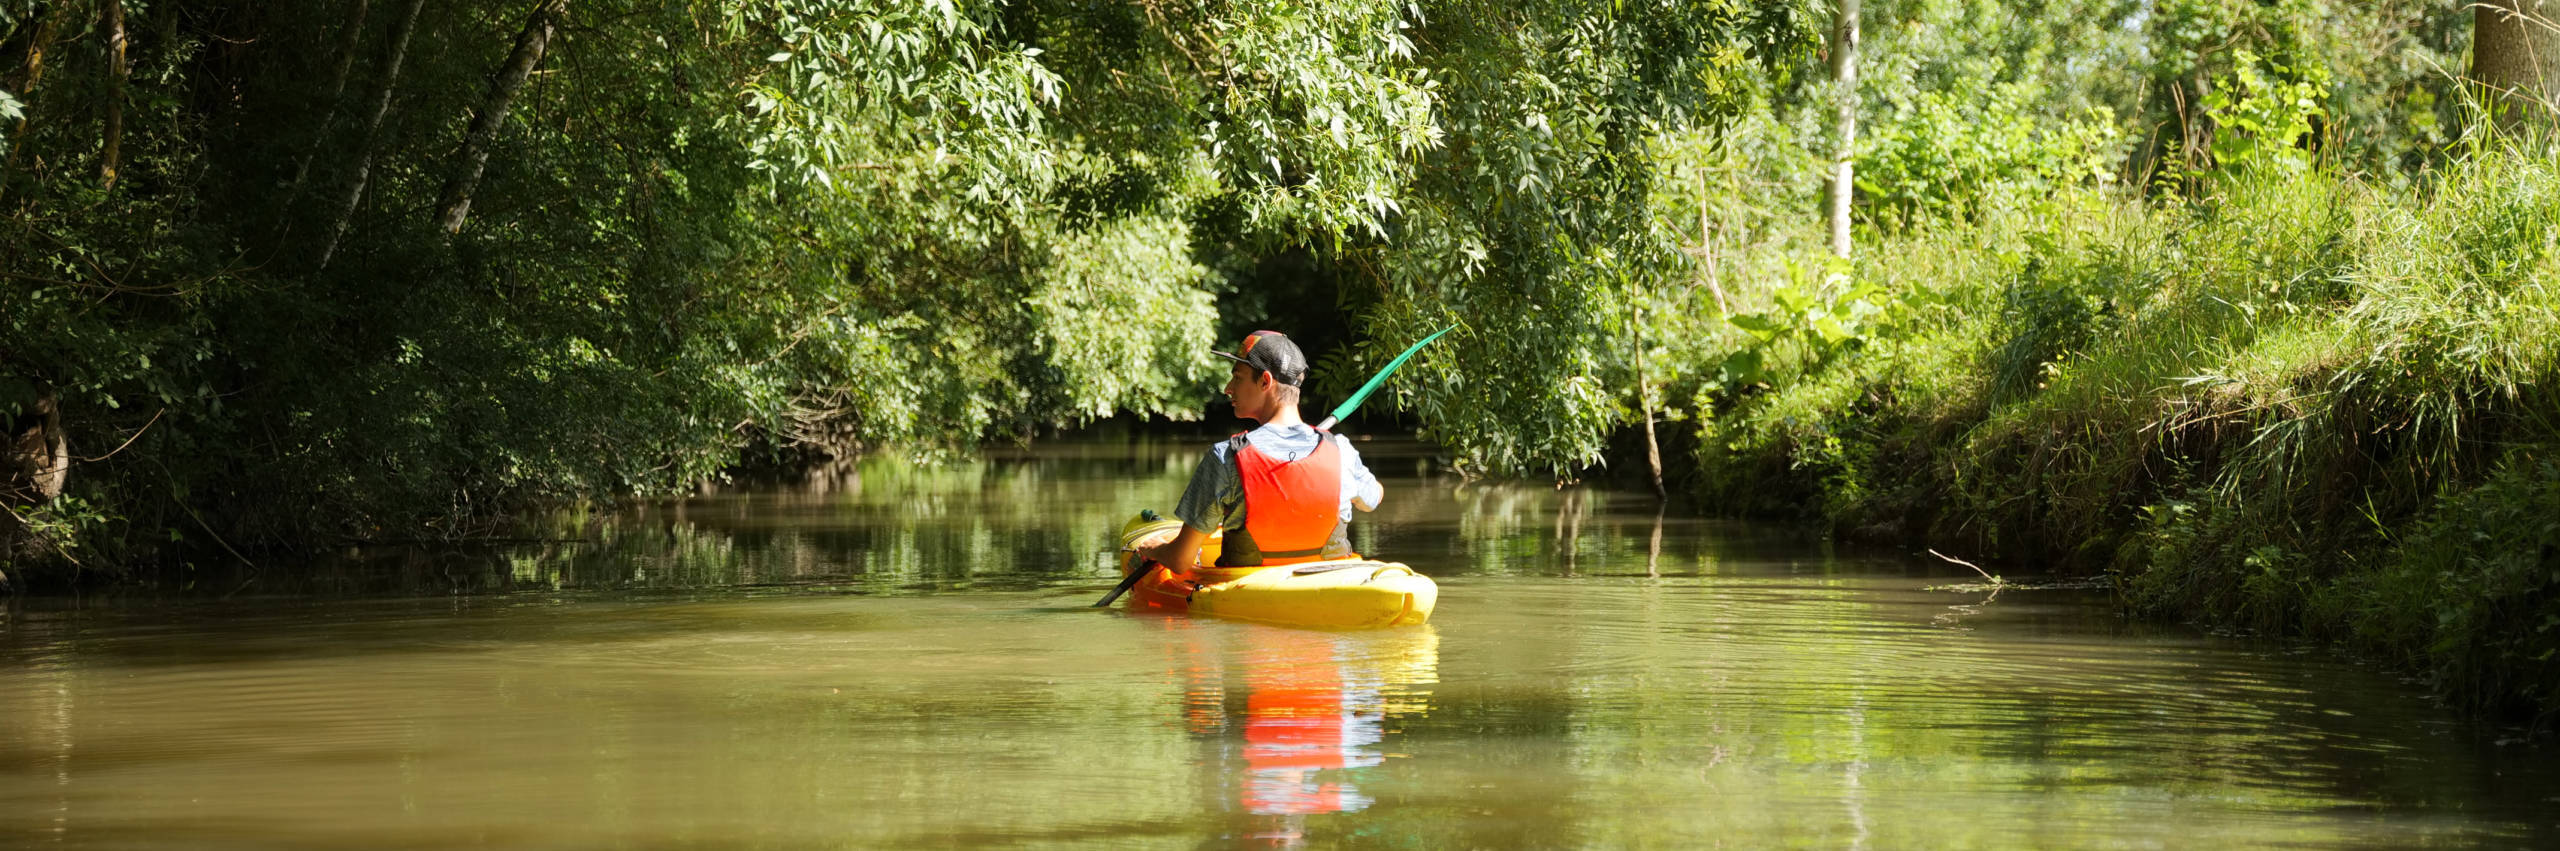 Découvrir le marais secret en kayak